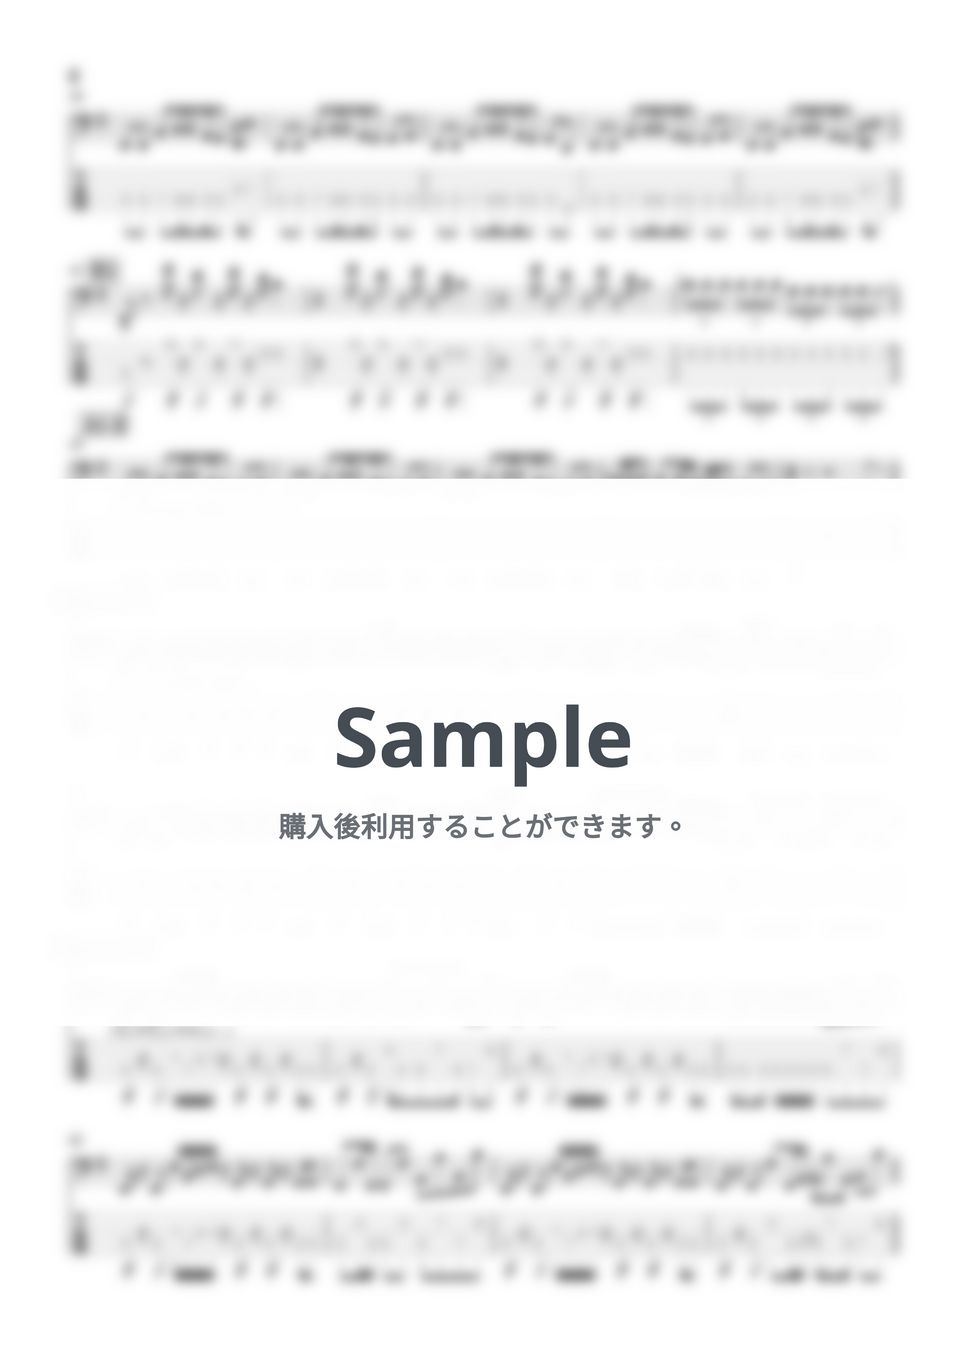 Kroi - Hyper(5弦Ver.) (Kroi/Hyoer/ベース/TAB/アンダーニンジャ) by TARUO's_Bass_Score